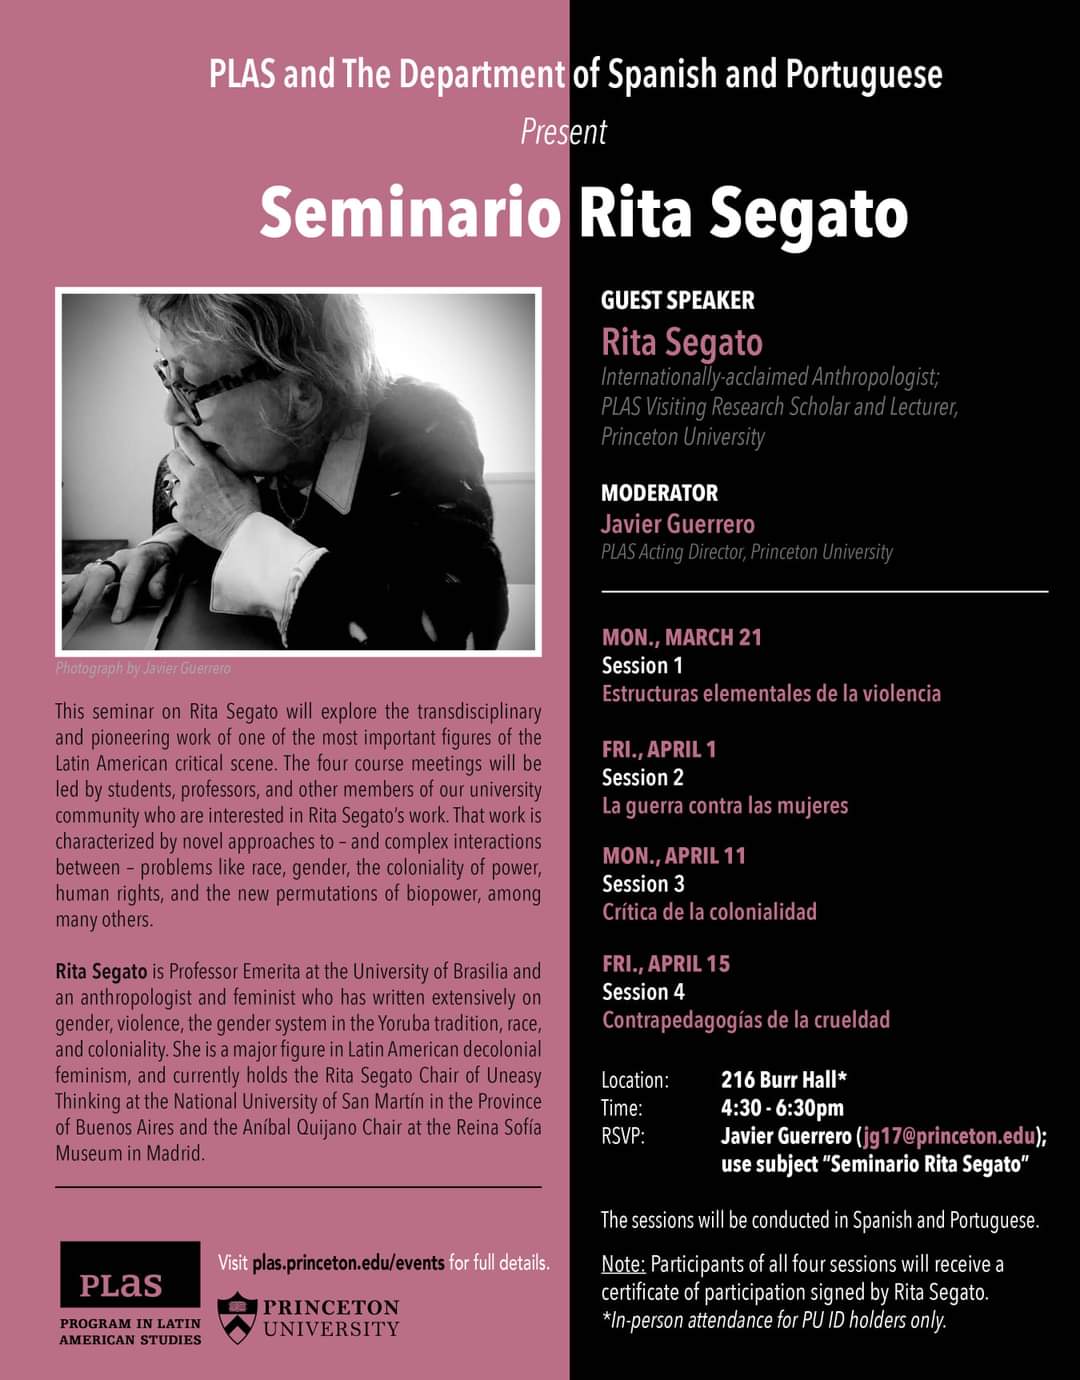 Volante del "Seminario Rita Segato", difundido por el Programa de Estudios Latinoamericanos de la Universidad de Princeton.